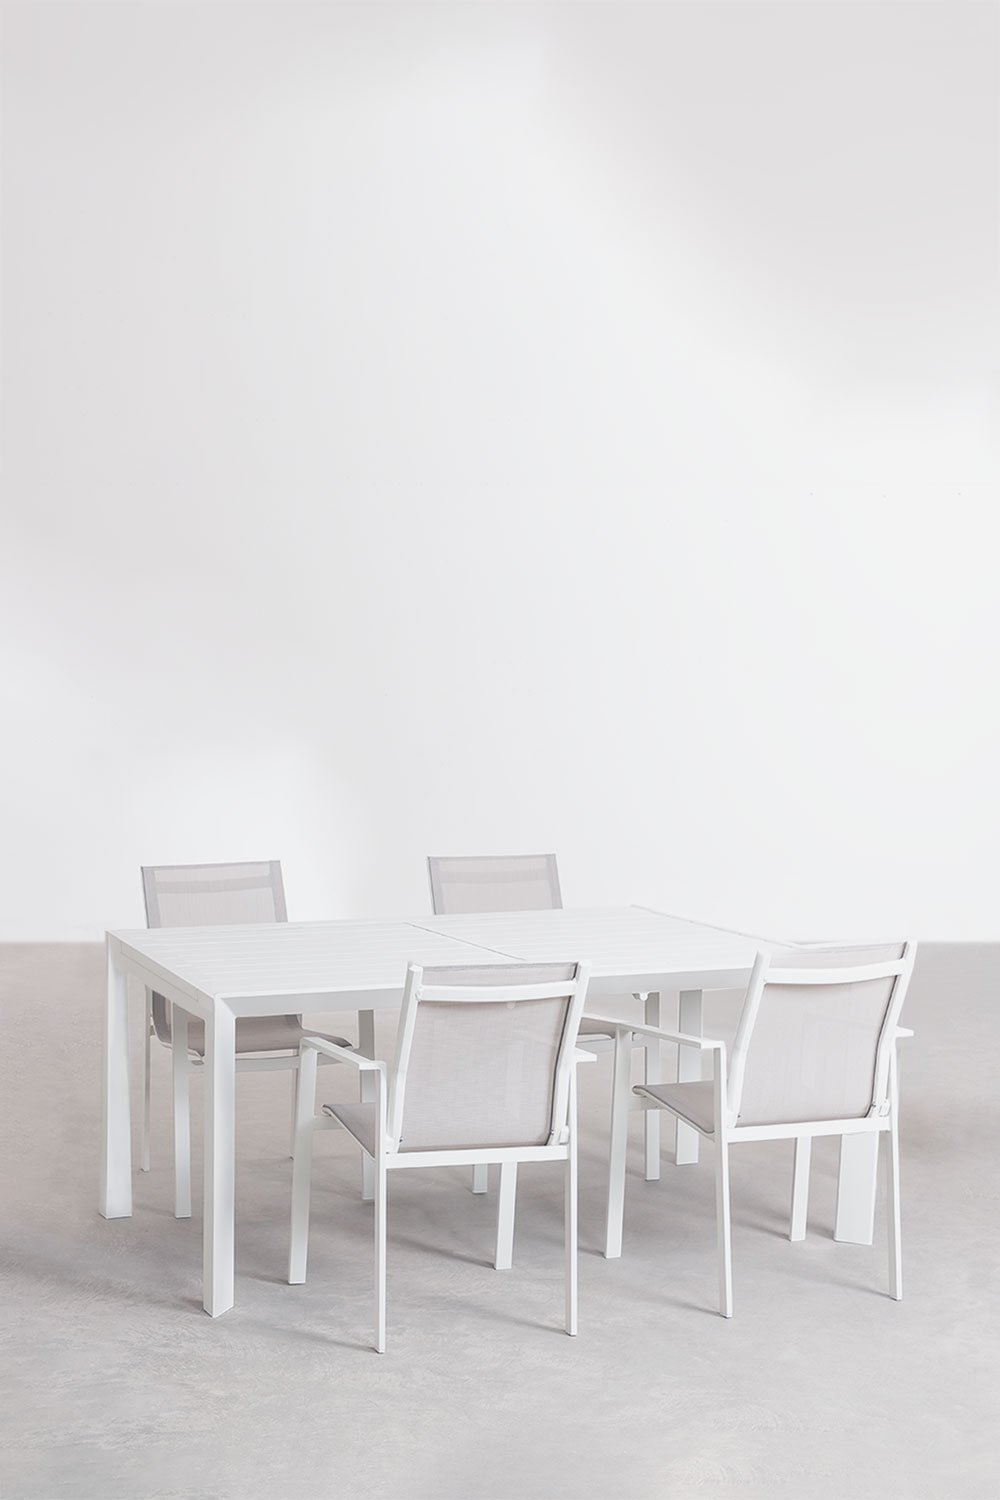  Zestaw aluminiowych prostokątnych rozkładanych stołów (180-240x100 cm) Starmi i 4 krzesła ogrodowe Eika, obrazek w galerii 1